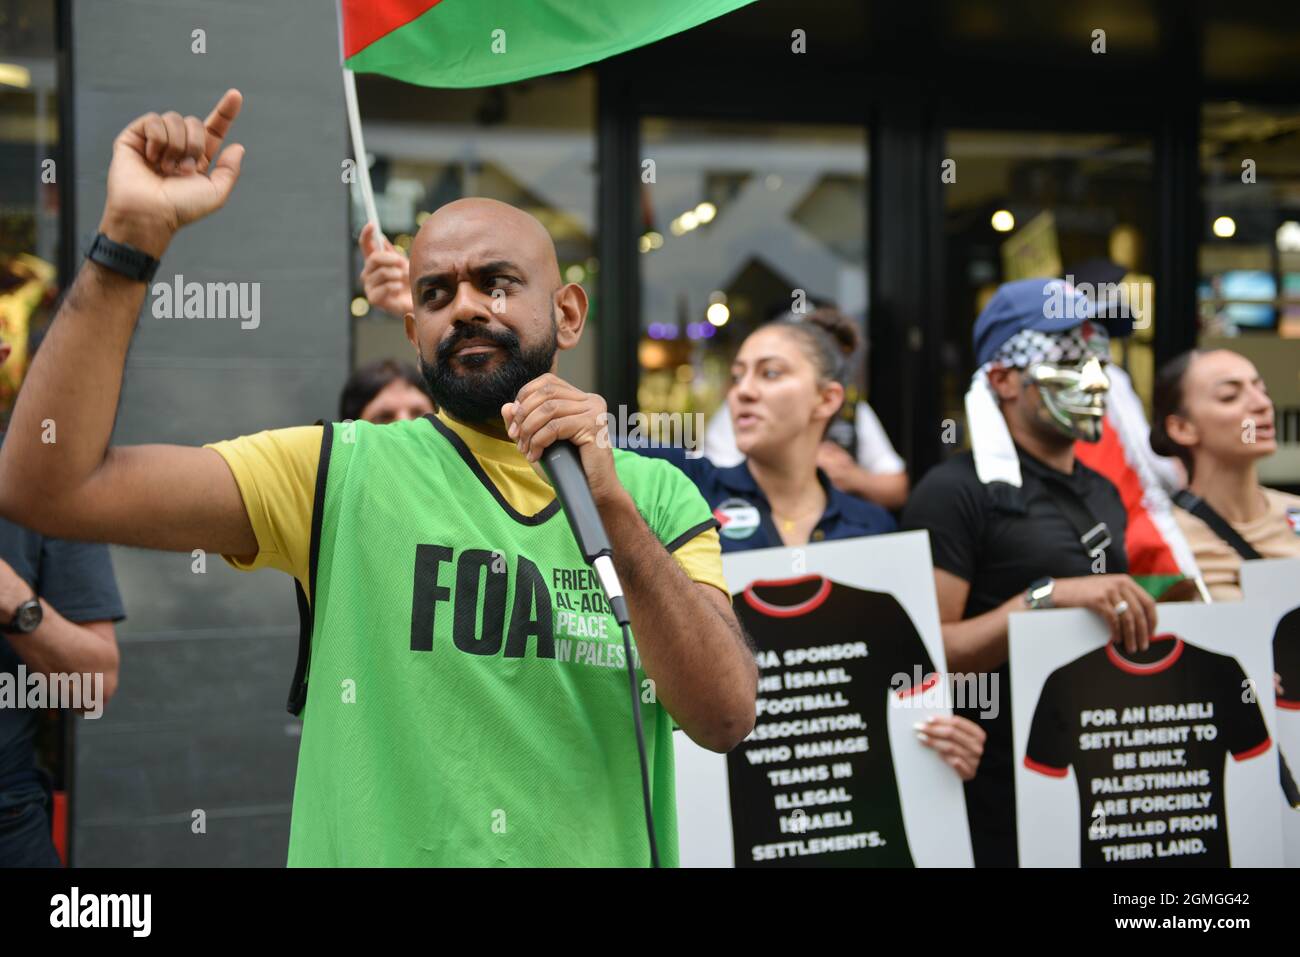 Boykott der Puma-Proteste, die von der palästinensischen Solidaritätskampagne und dem FOA (Friends of Al Aqsa) im Flagship-Store von Puma in der Carnaby Street in London organisiert wurden. Aktivisten demonstrierten gegen Puma's Sponsoring des IFA (Israel Football Association). Stockfoto